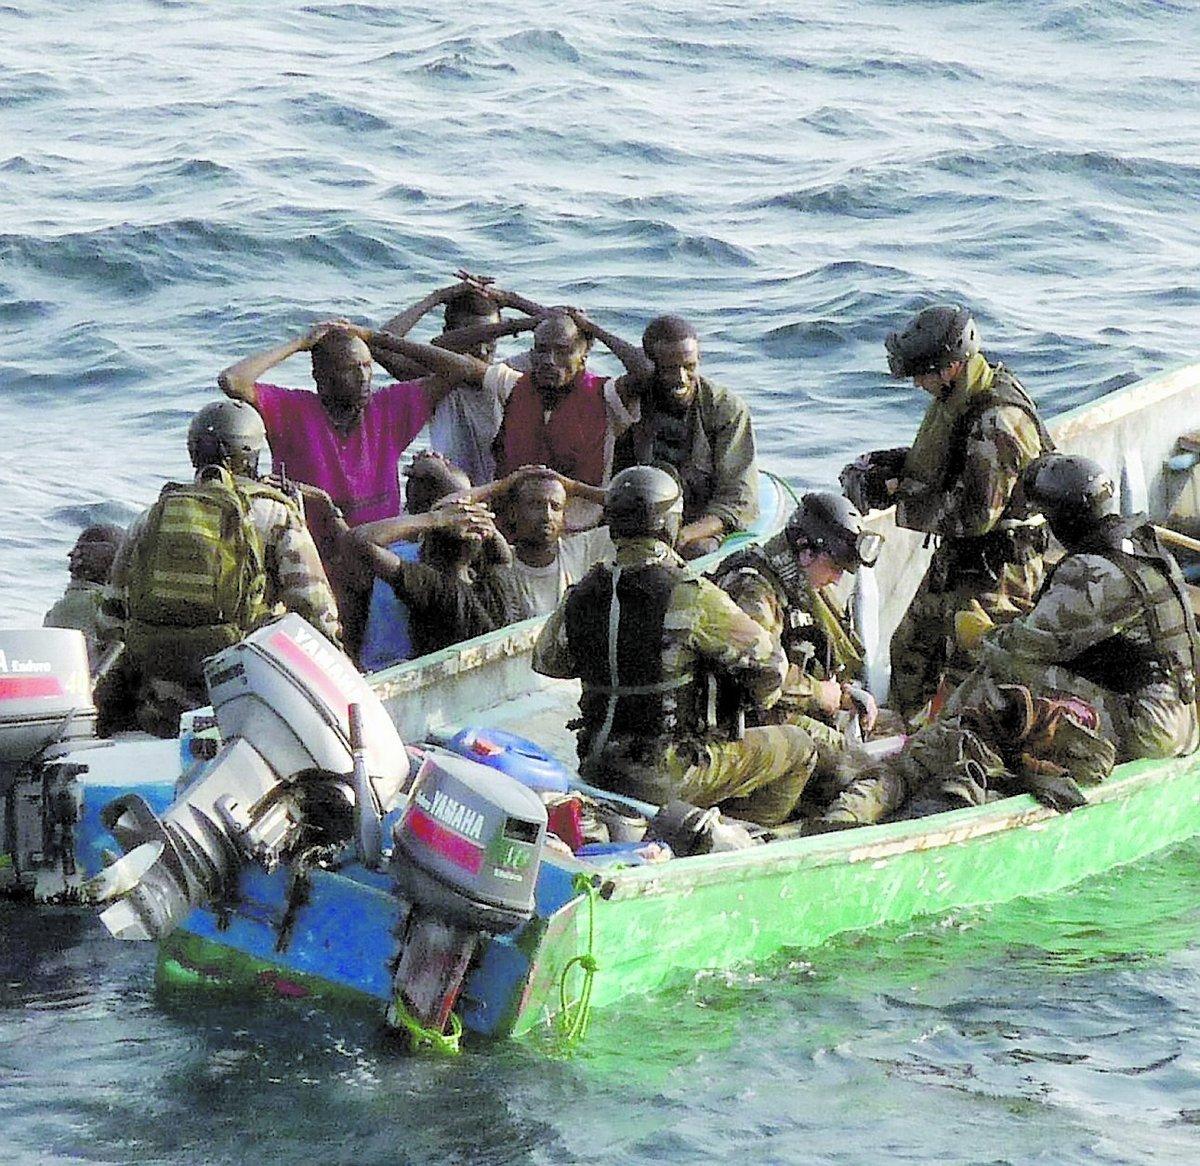 Misstänkta pirater tillfångtagna efter att franska kommandosoldater stormat en kapad segelbåt utanför Somalias kust. En människa omkom vid ingripandet.